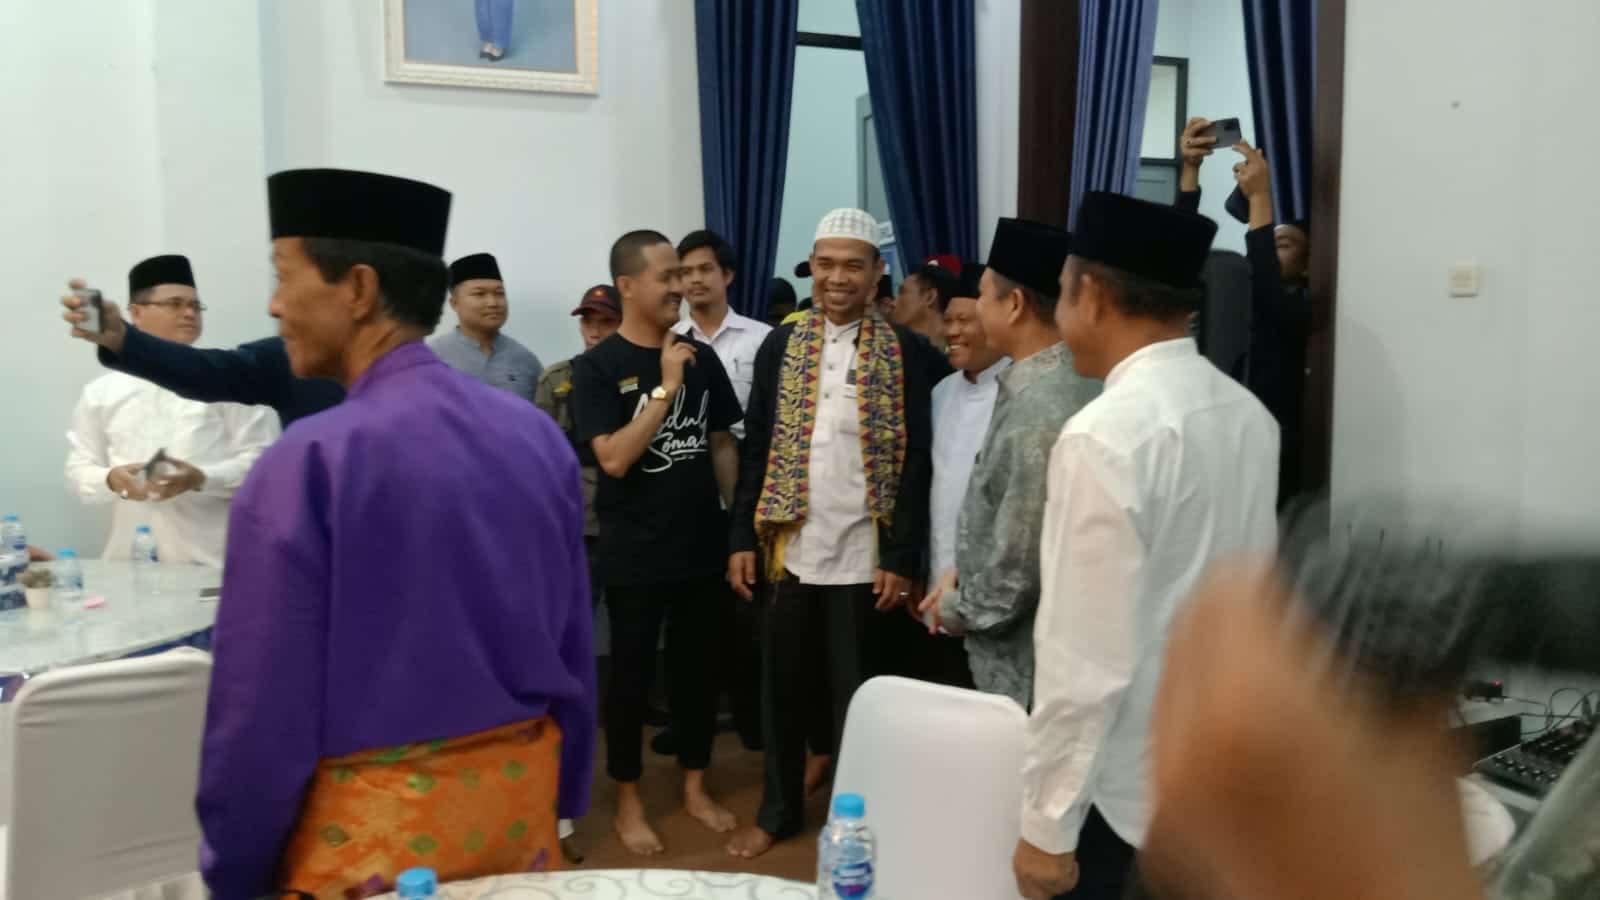 Ustadz kondang Abdul Somad tiba di Rumah Jabatan Dinas Wakil Bupati Kabupaten Kapuas Hulu untuk melaksanakan shalat Zuhur berjamaah dan ramah tamah serta makan siang bersama. (Foto: Ishaq)